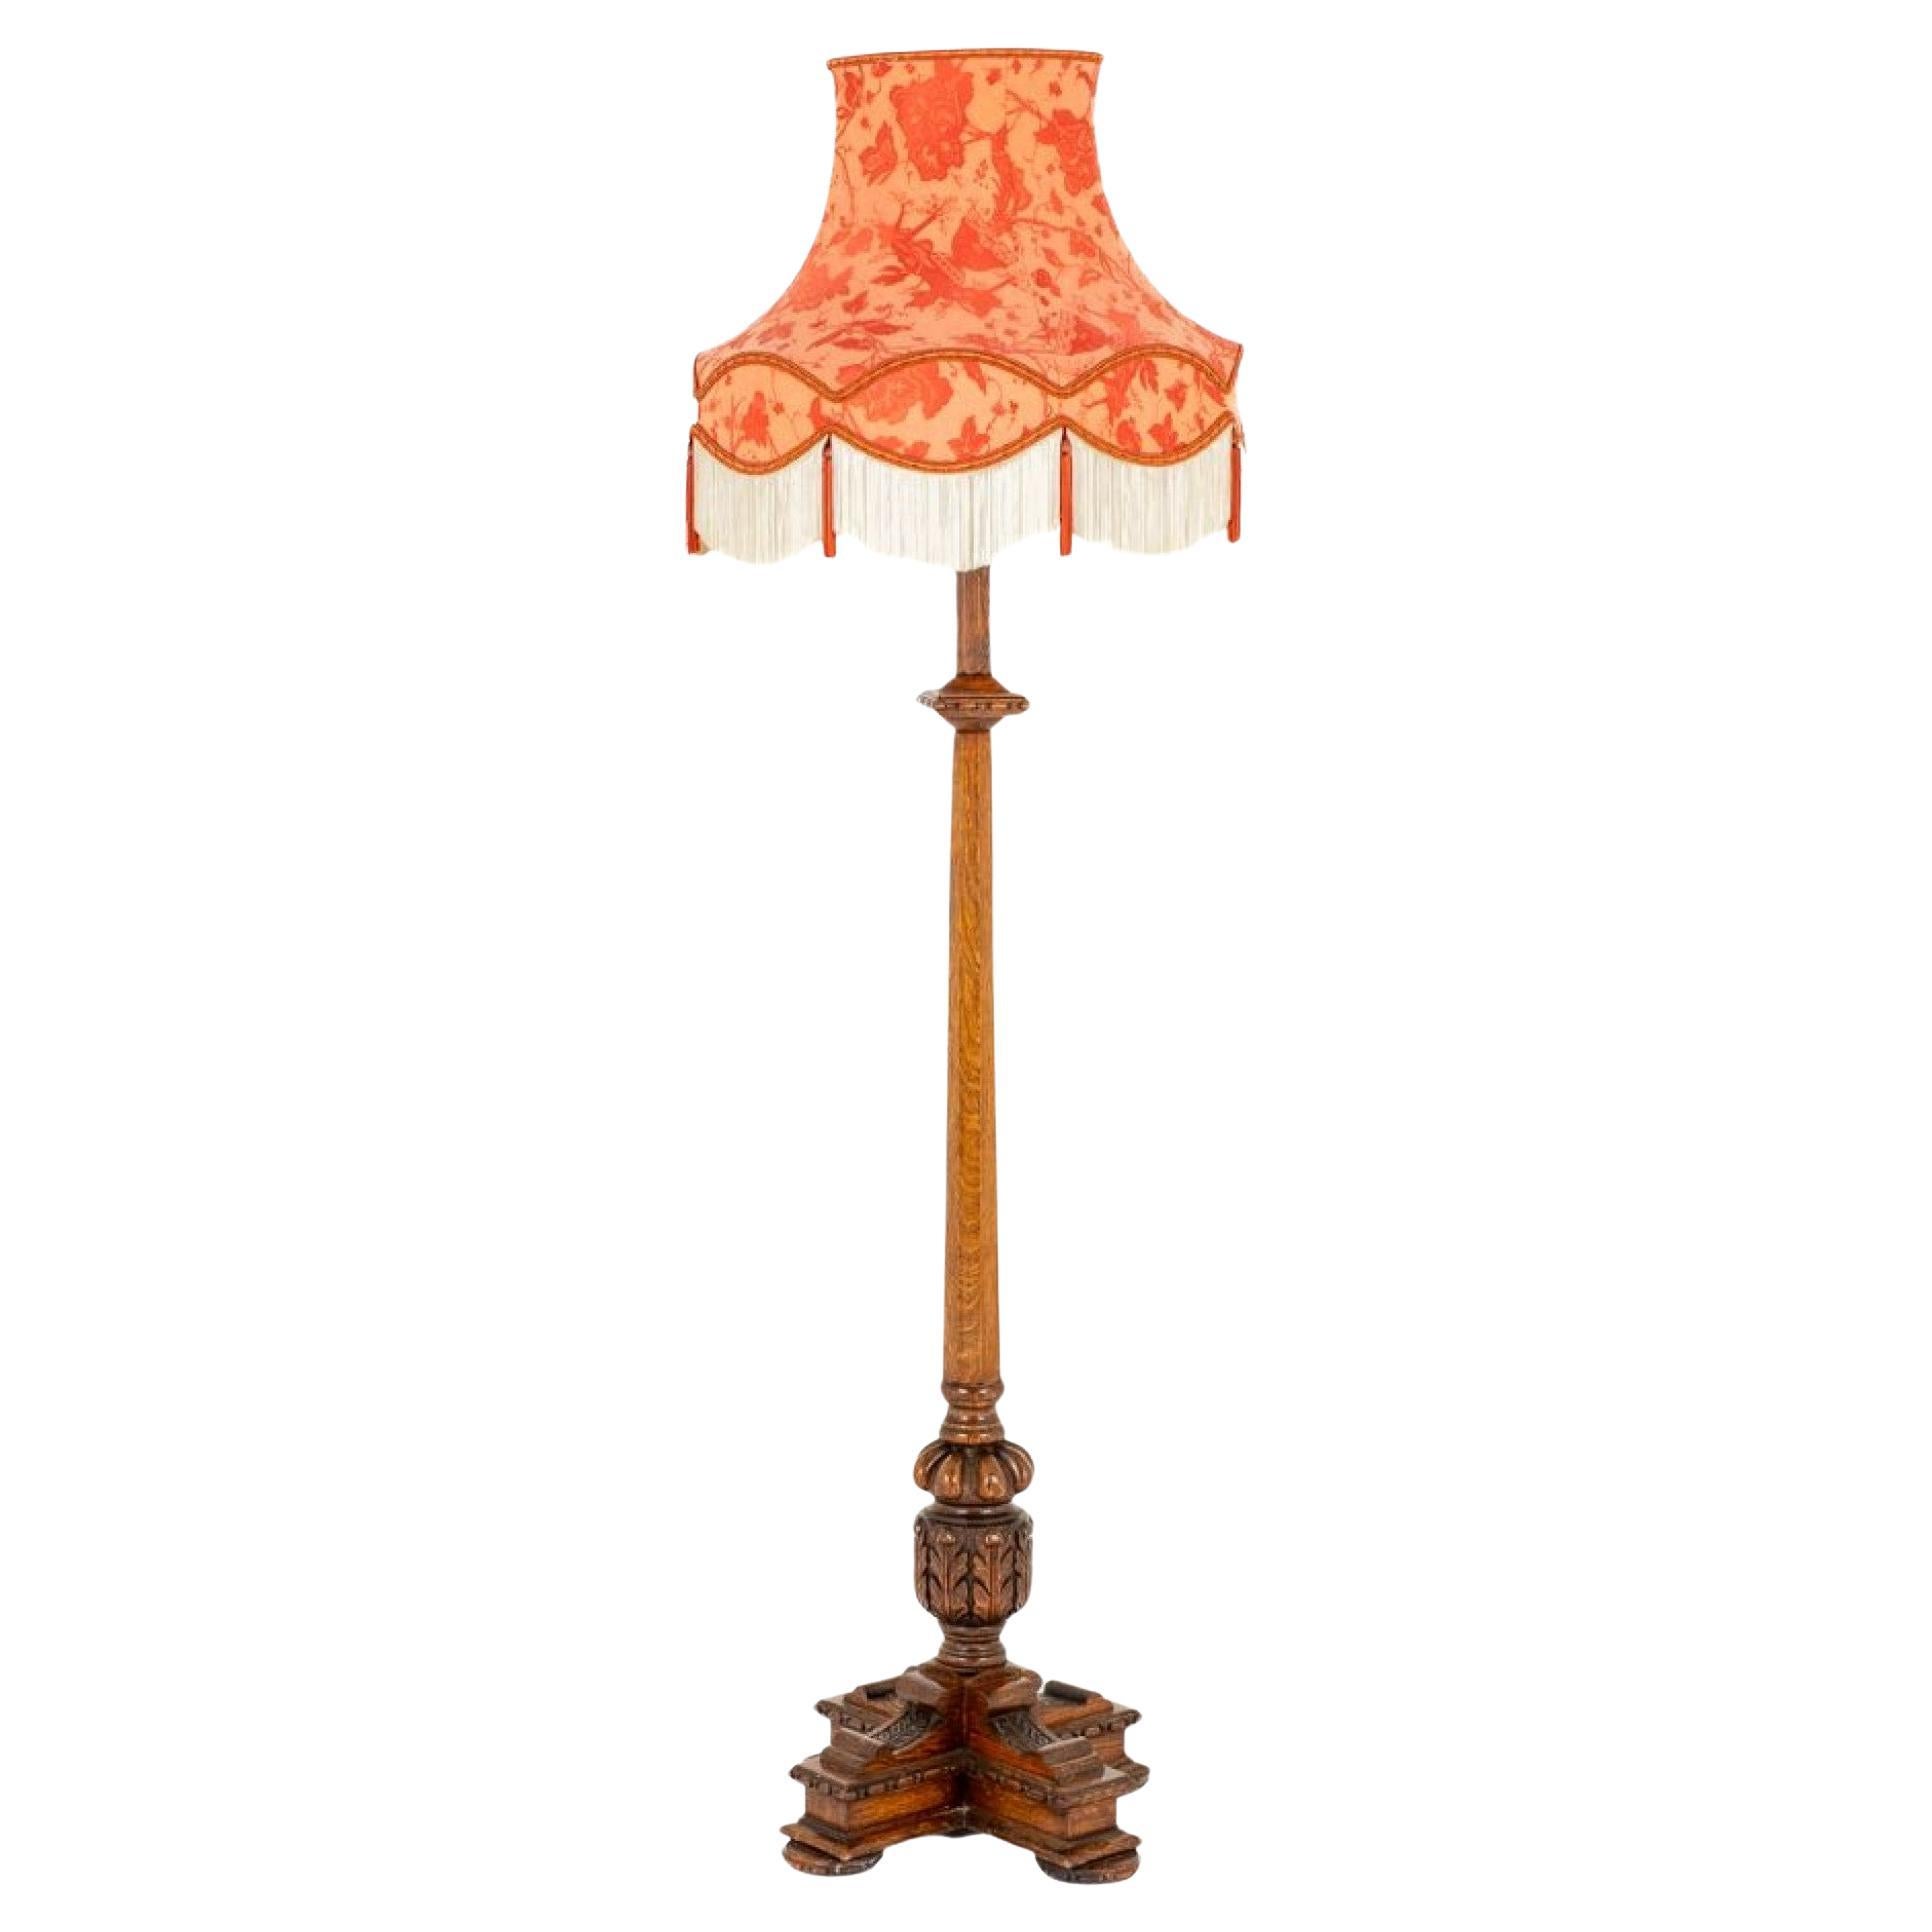 Jacobean Revival Lamp Stand Floor Lamp Light